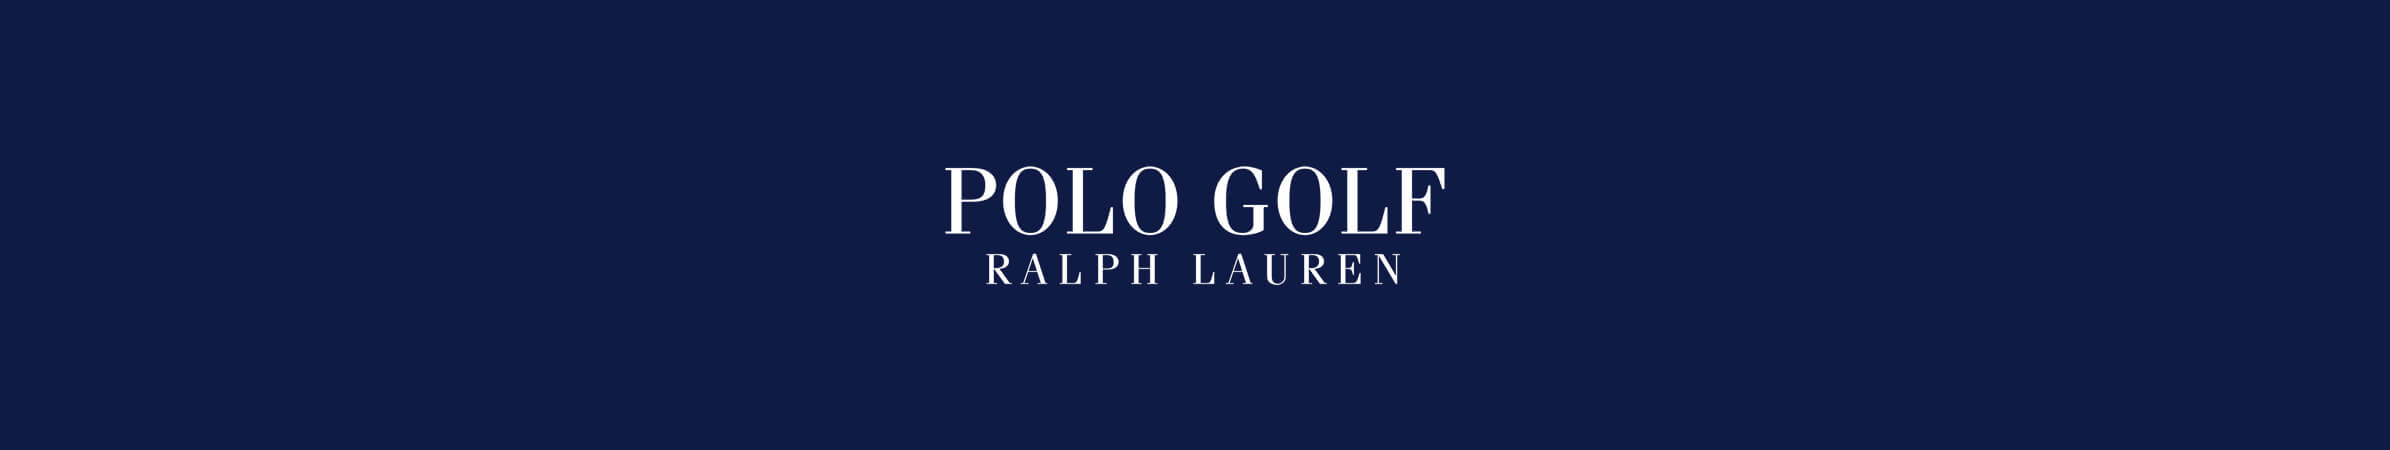 Ralph Lauren POLO Golf